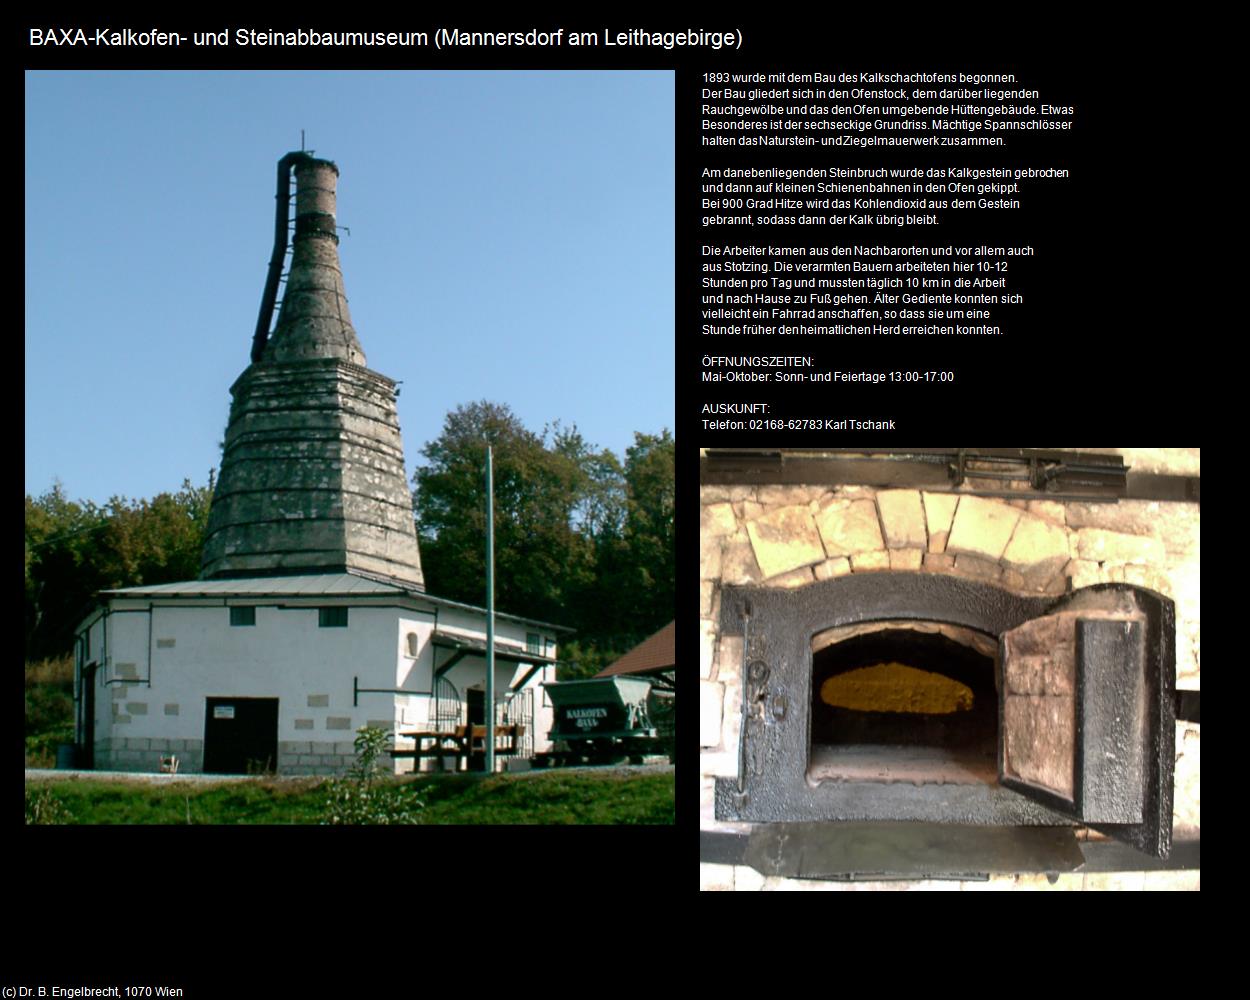 Kalkofen- und Steinabbaumuseum (Mannersdorf am Leithagebirge) in Kulturatlas-NIEDERÖSTERREICH